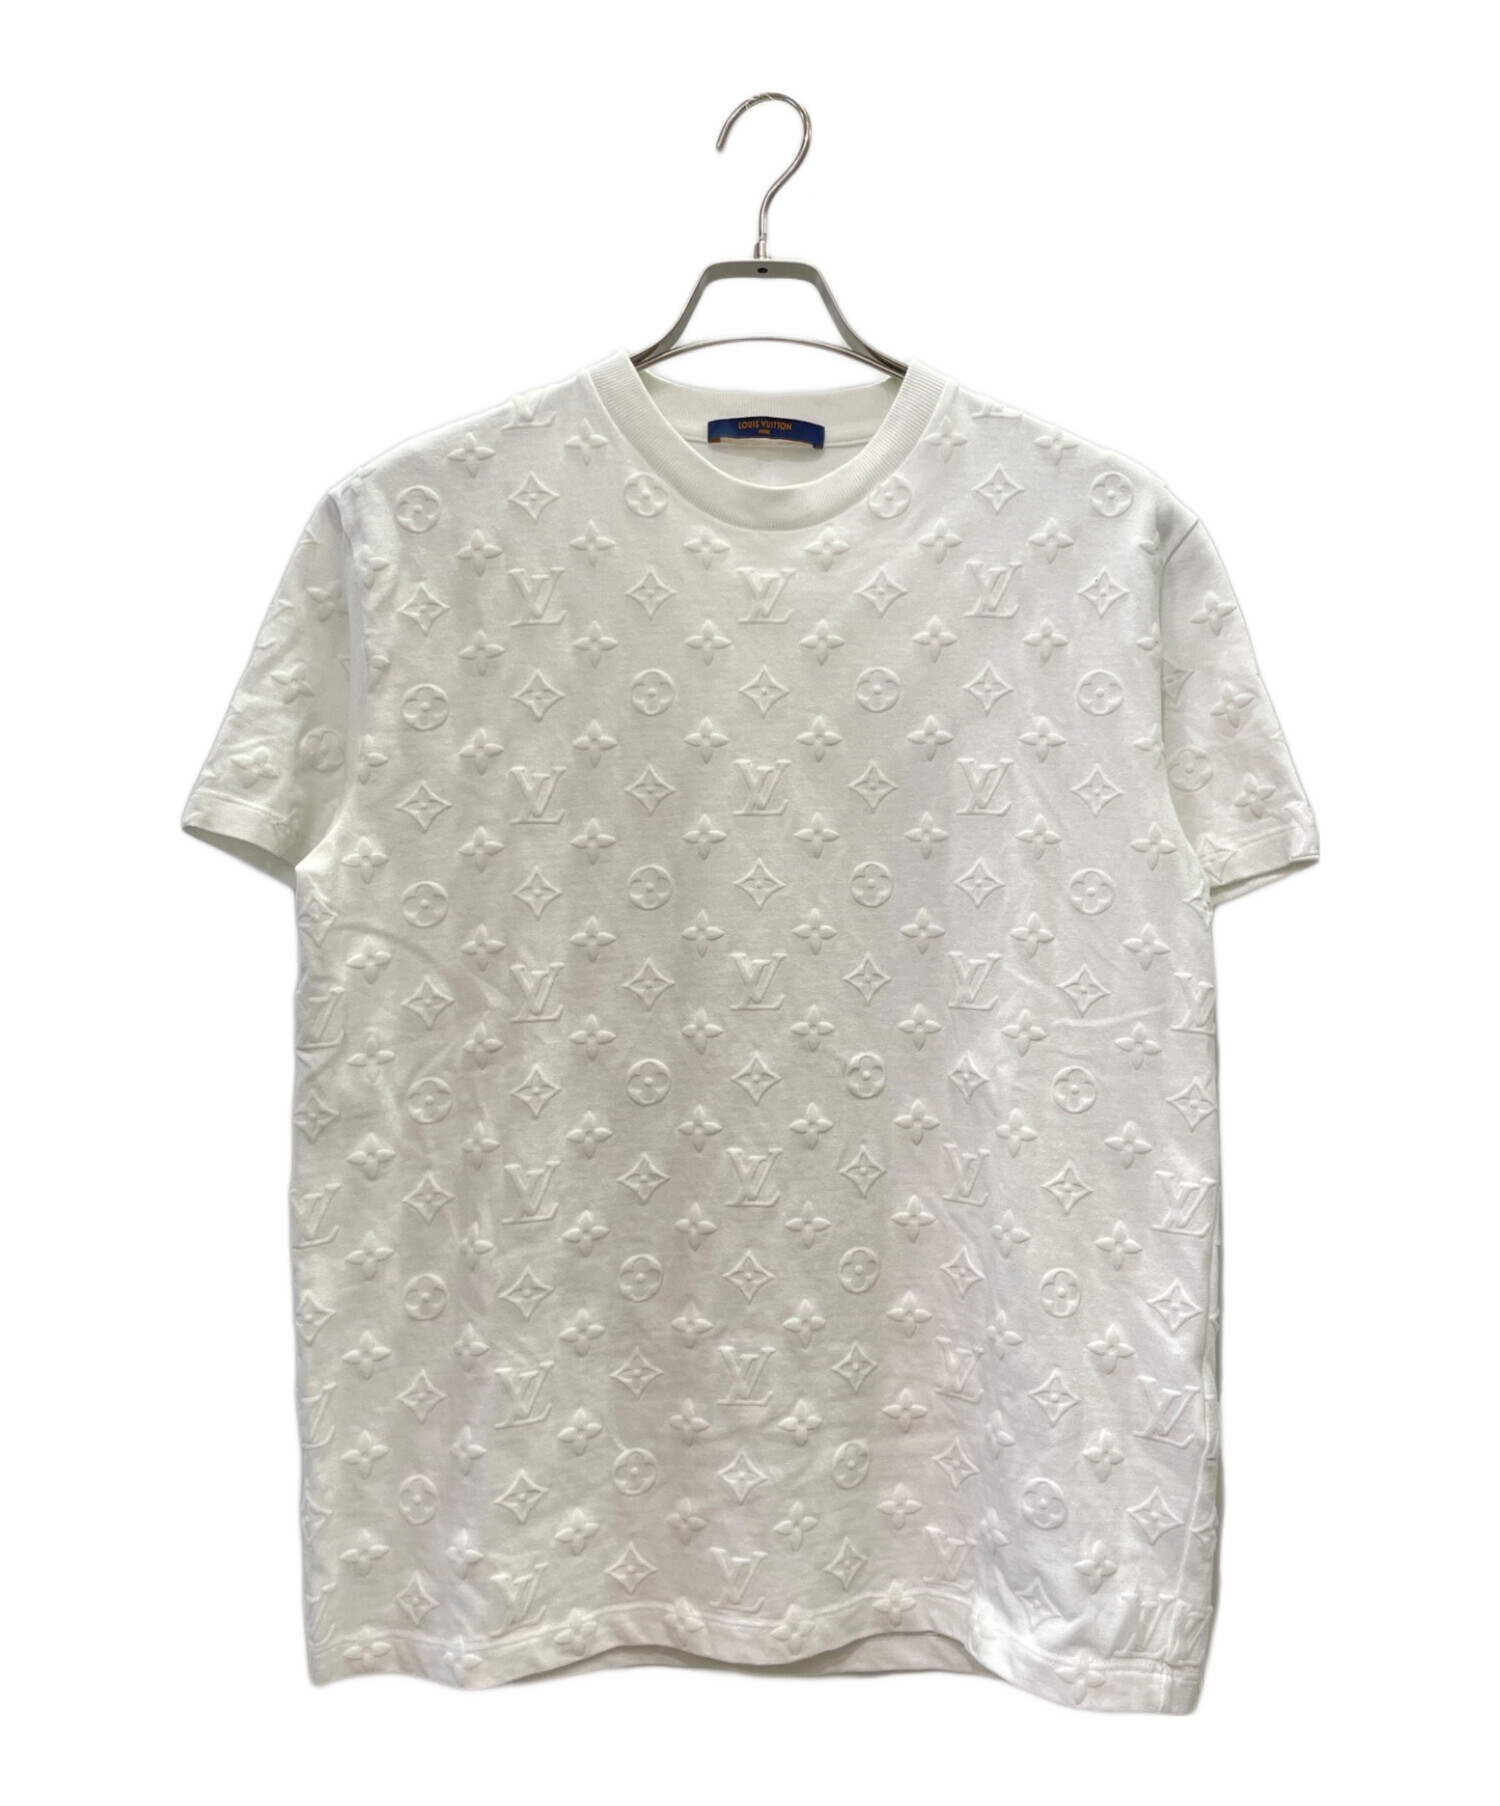 LOUIS VUITTON (ルイ ヴィトン) モノグラム フックアンドループ Tシャツ ホワイト サイズ:S